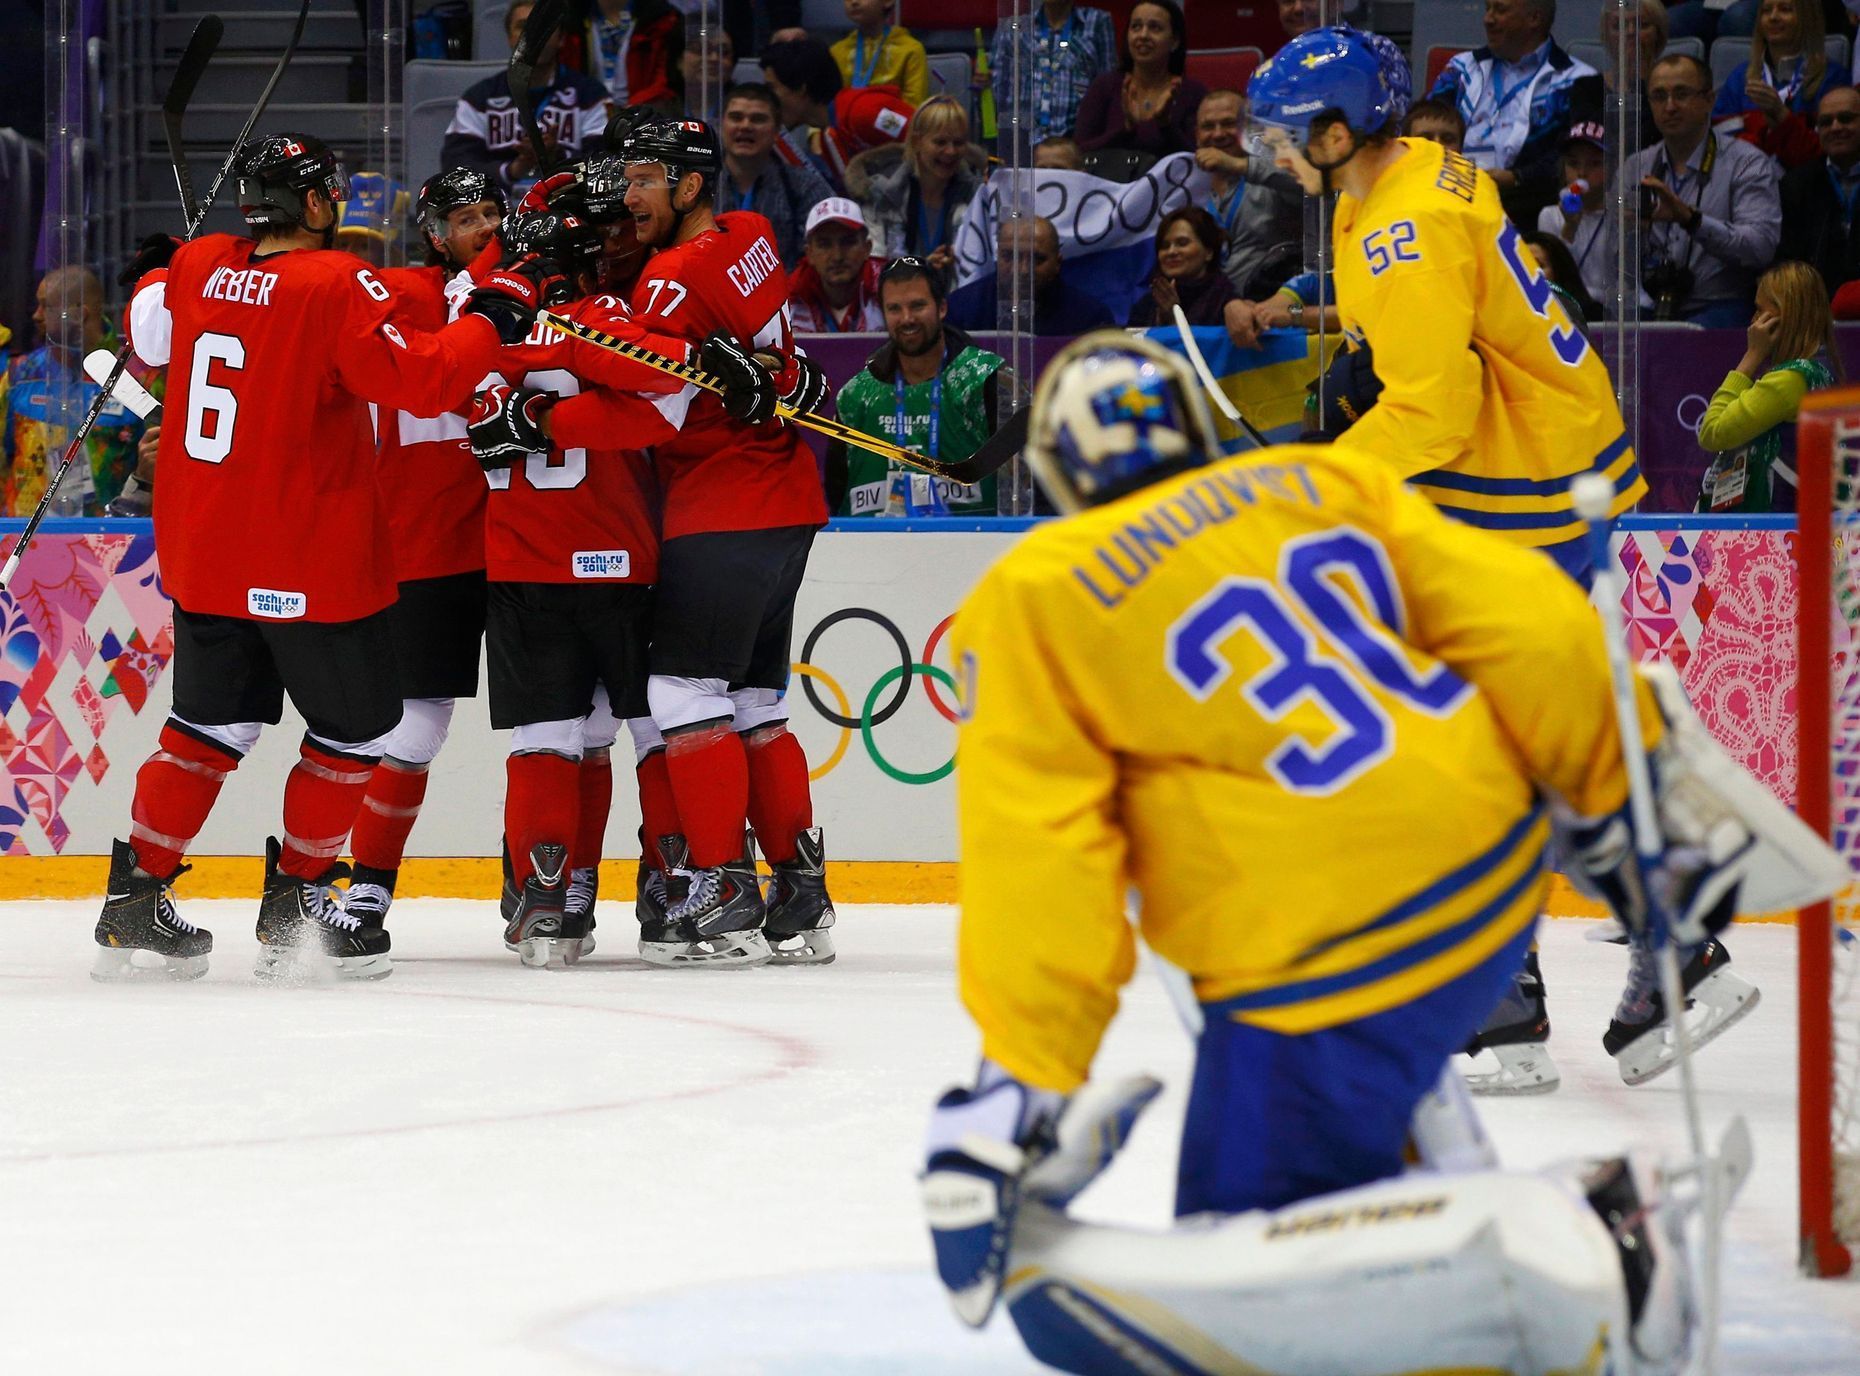 Kanada-Švédsko, finále: Kanaďané slaví gól na 1:0 a smutný Henrik Lundqvist (30)